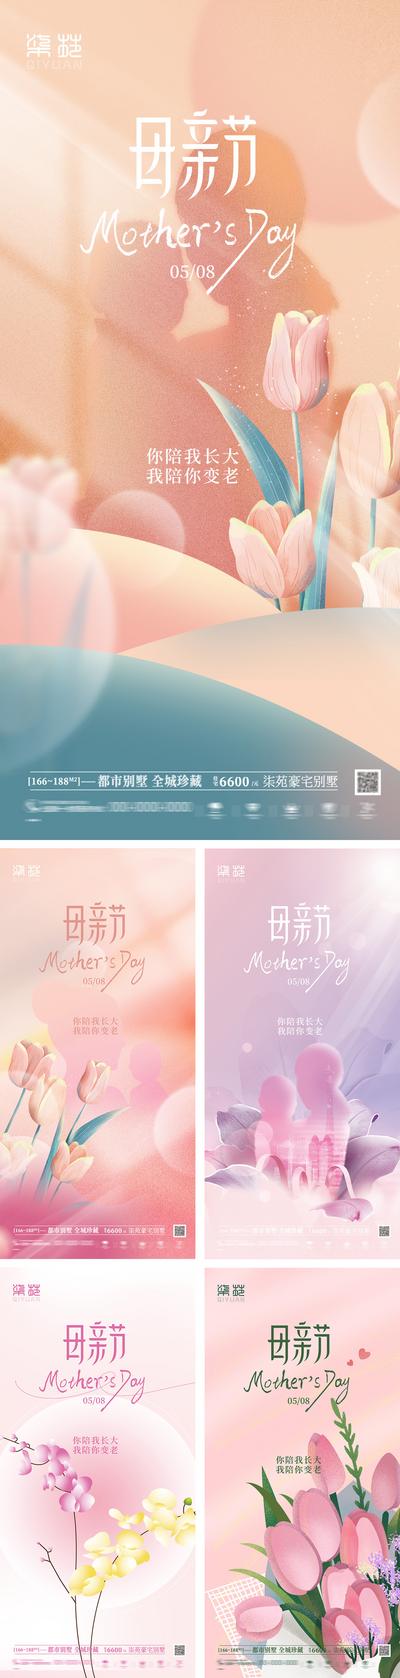 南门网 海报 公历节日 母亲节 缤纷 花朵 插画 系列